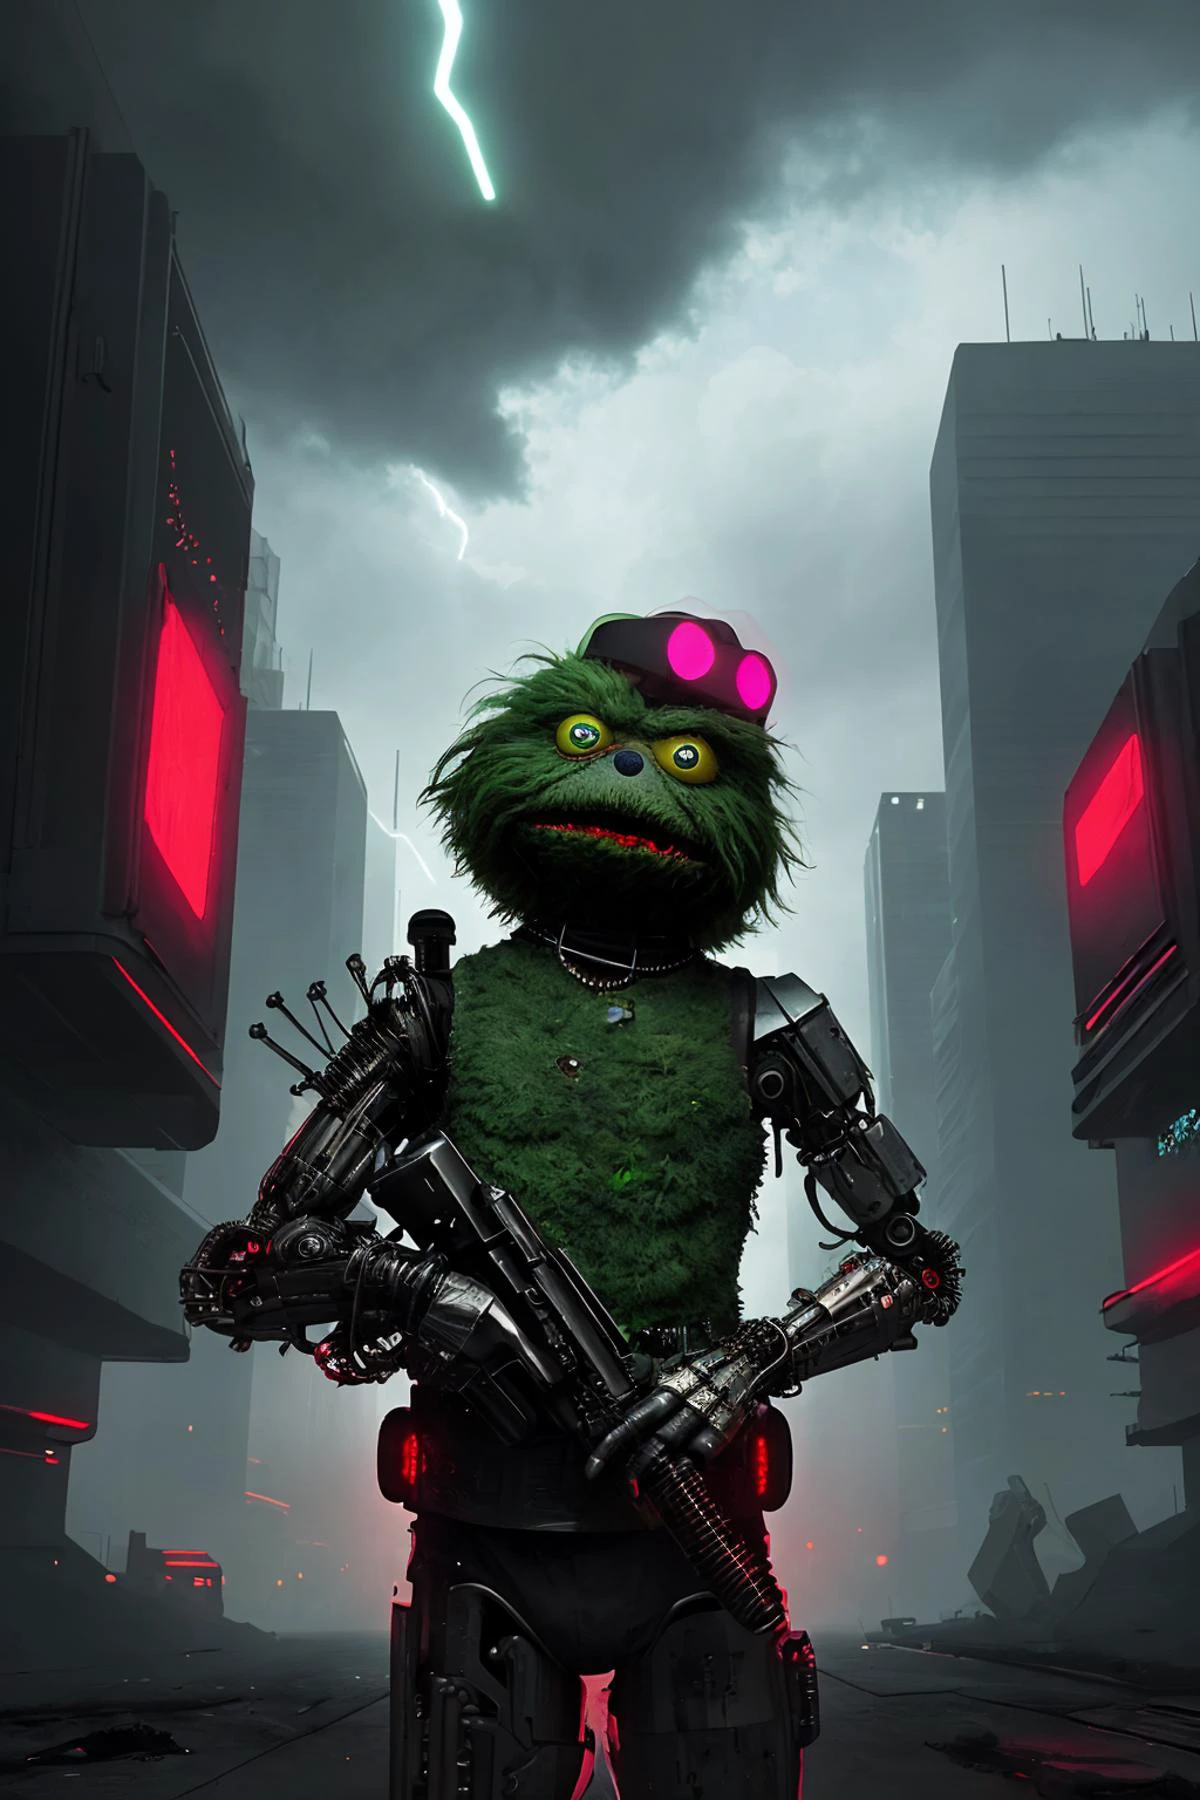 Porträt von Oscar dem Grouch als Cyborg in einem Cyberpunk-Setting, leuchtend rote Augen, tödliche Absicht, Niedlich, Erschreckend, gefährlich, Liebenswert, wolkige Himmel, smog